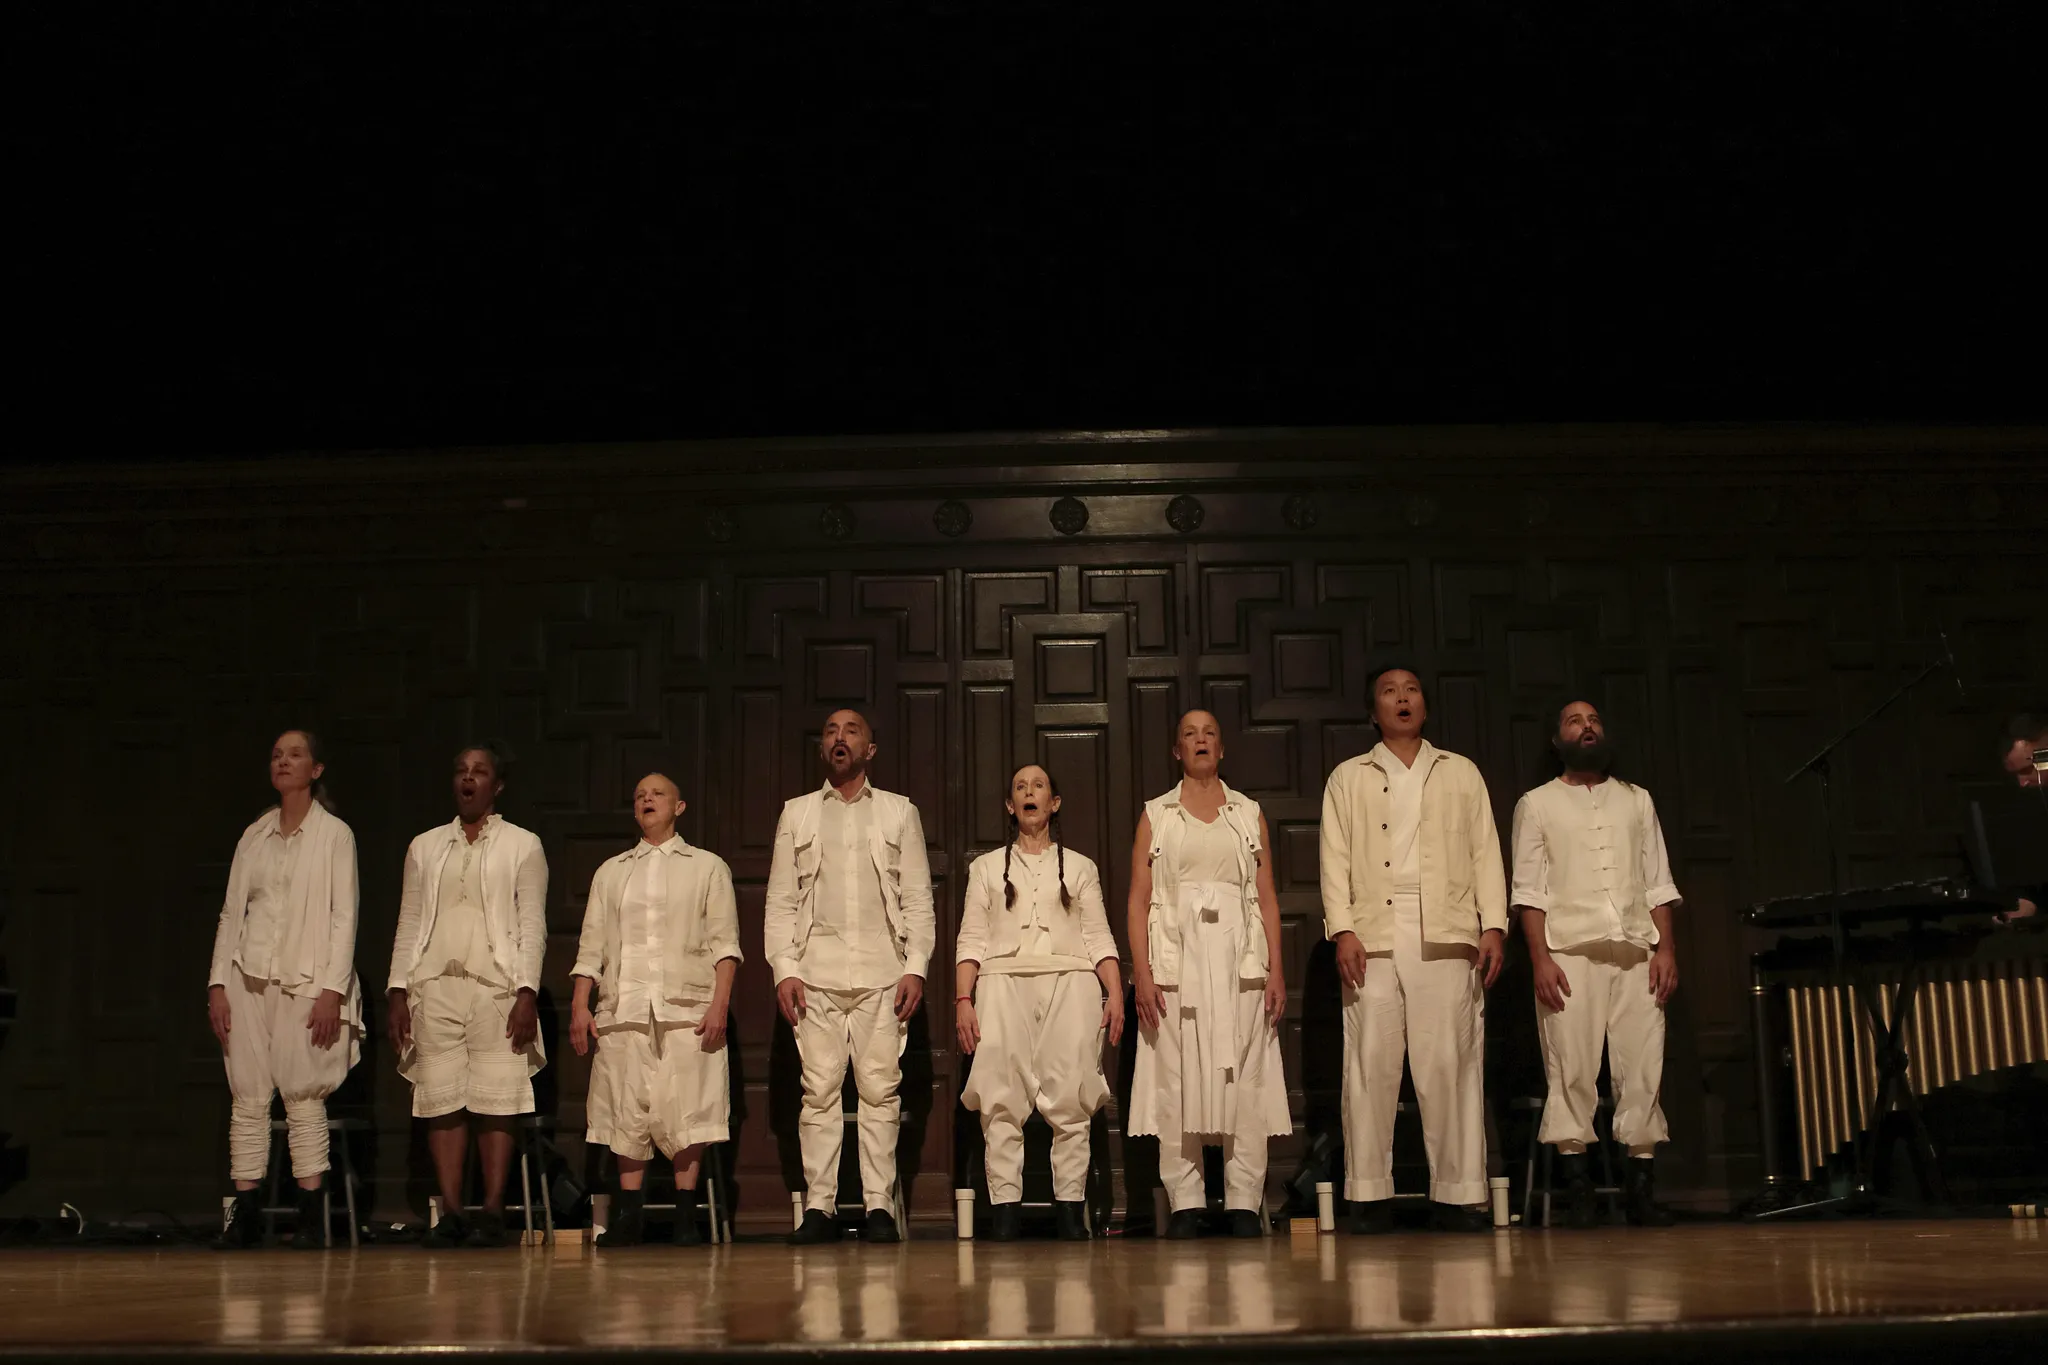 8 personen van verschillende leeftijd, etniciteit, lengte en haardracht zingen in losse witte kleding naast iemand die de marimba bespeelt.